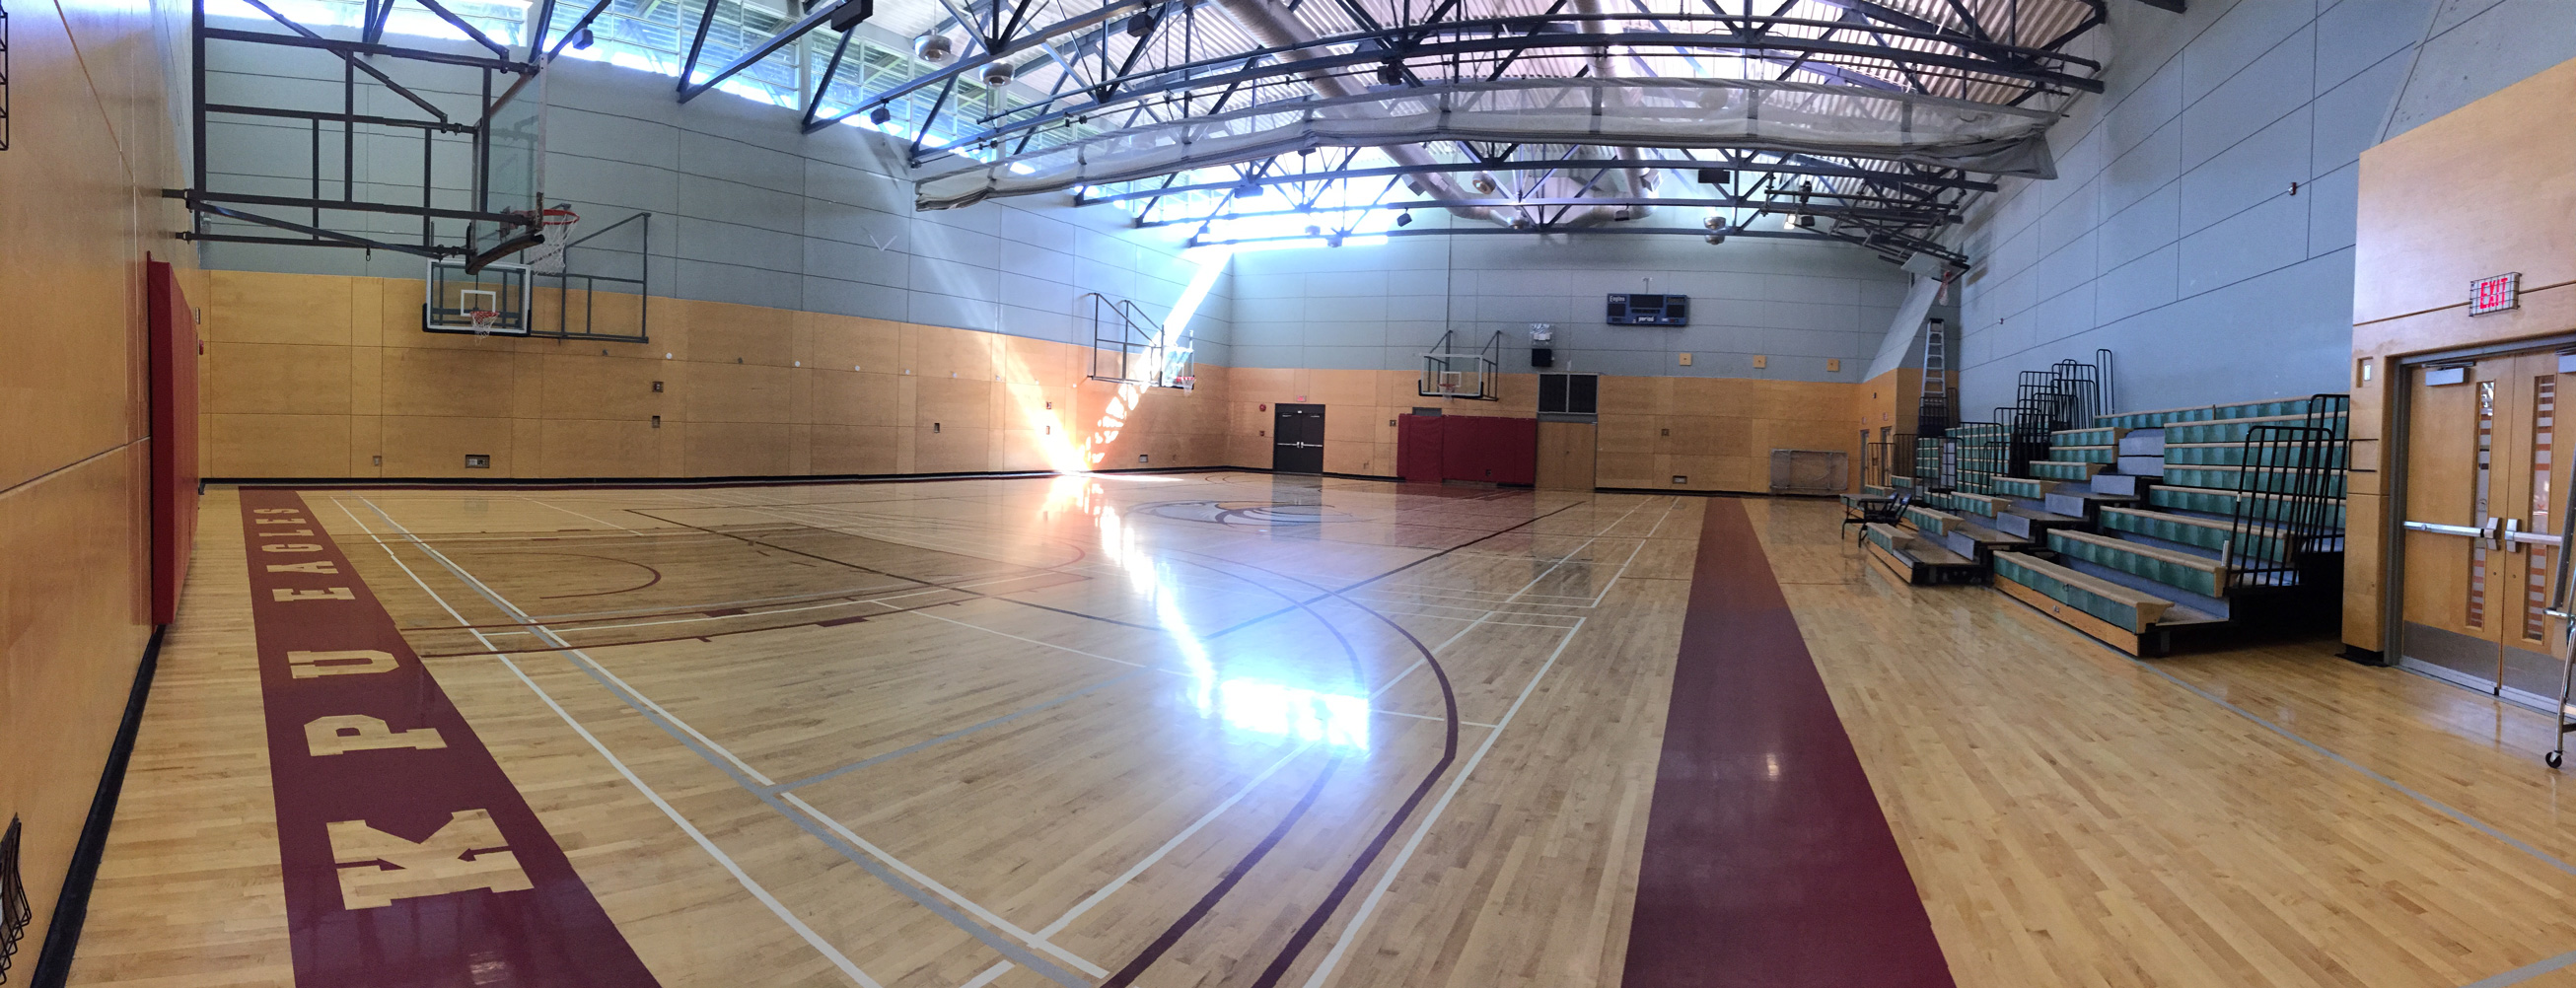 Surrey Campus Gymnasium 